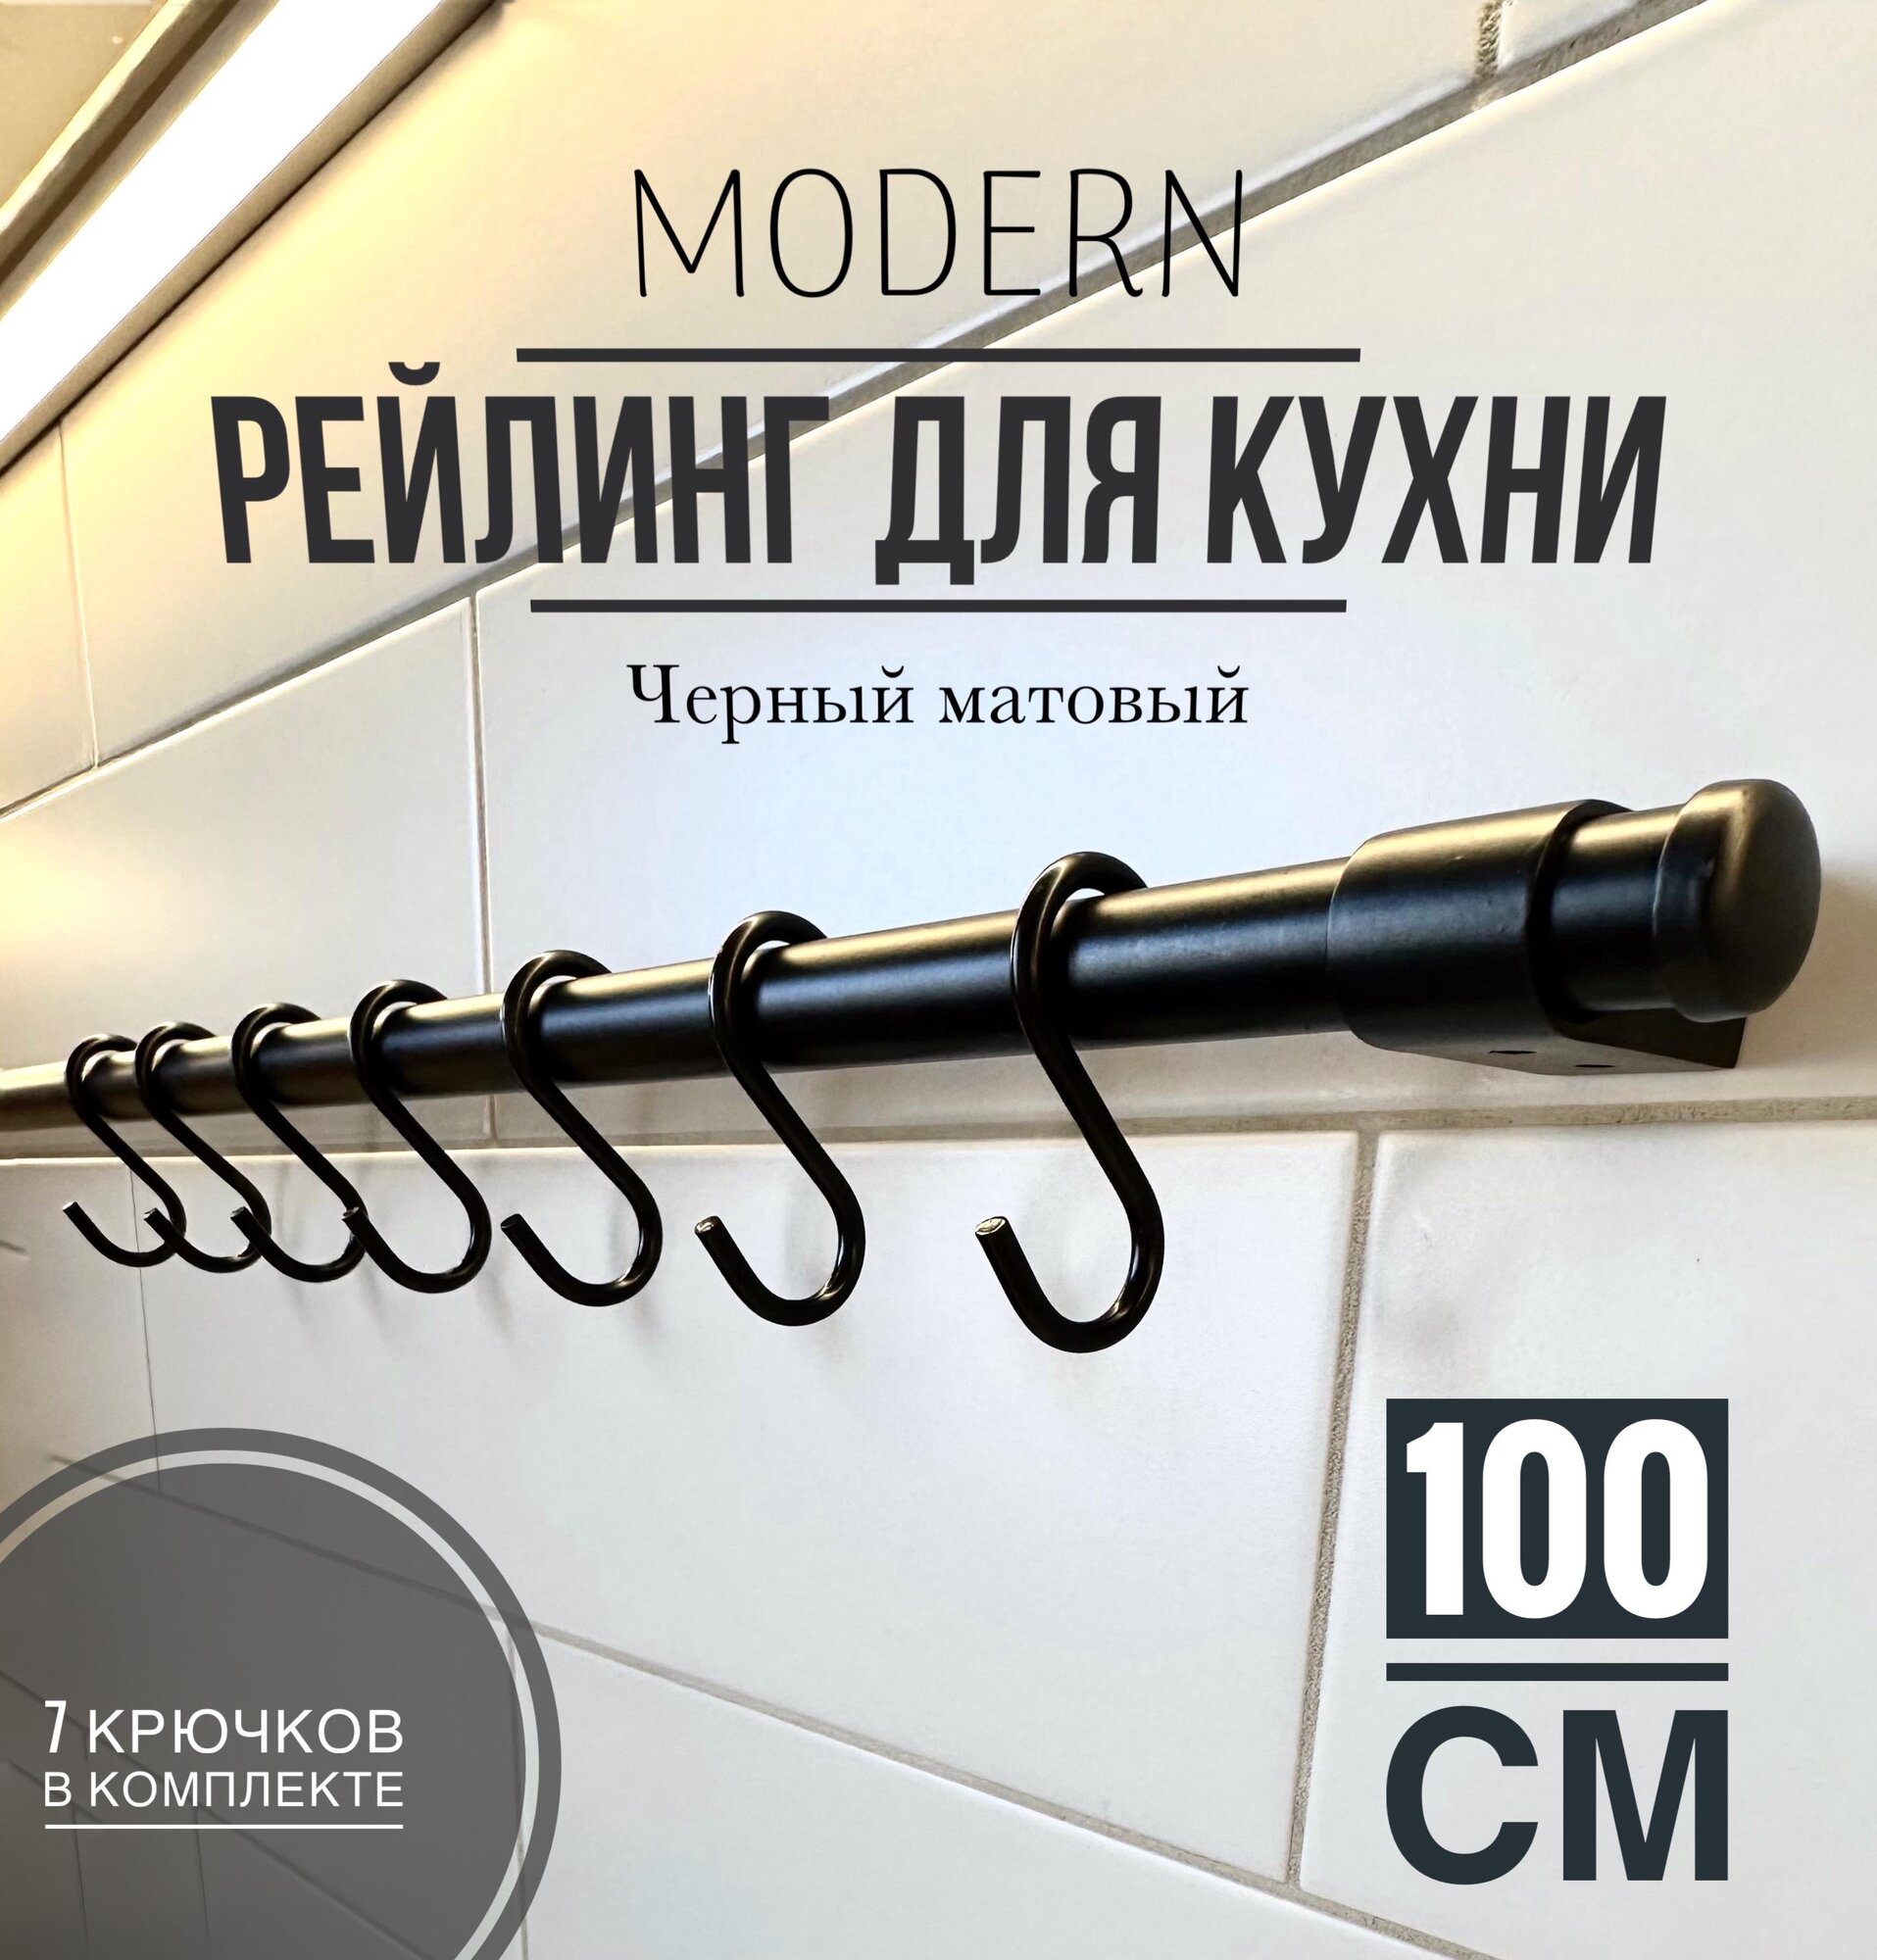 Рейлинг для кухни Modern чёрный, 100 см + 7 крючков.